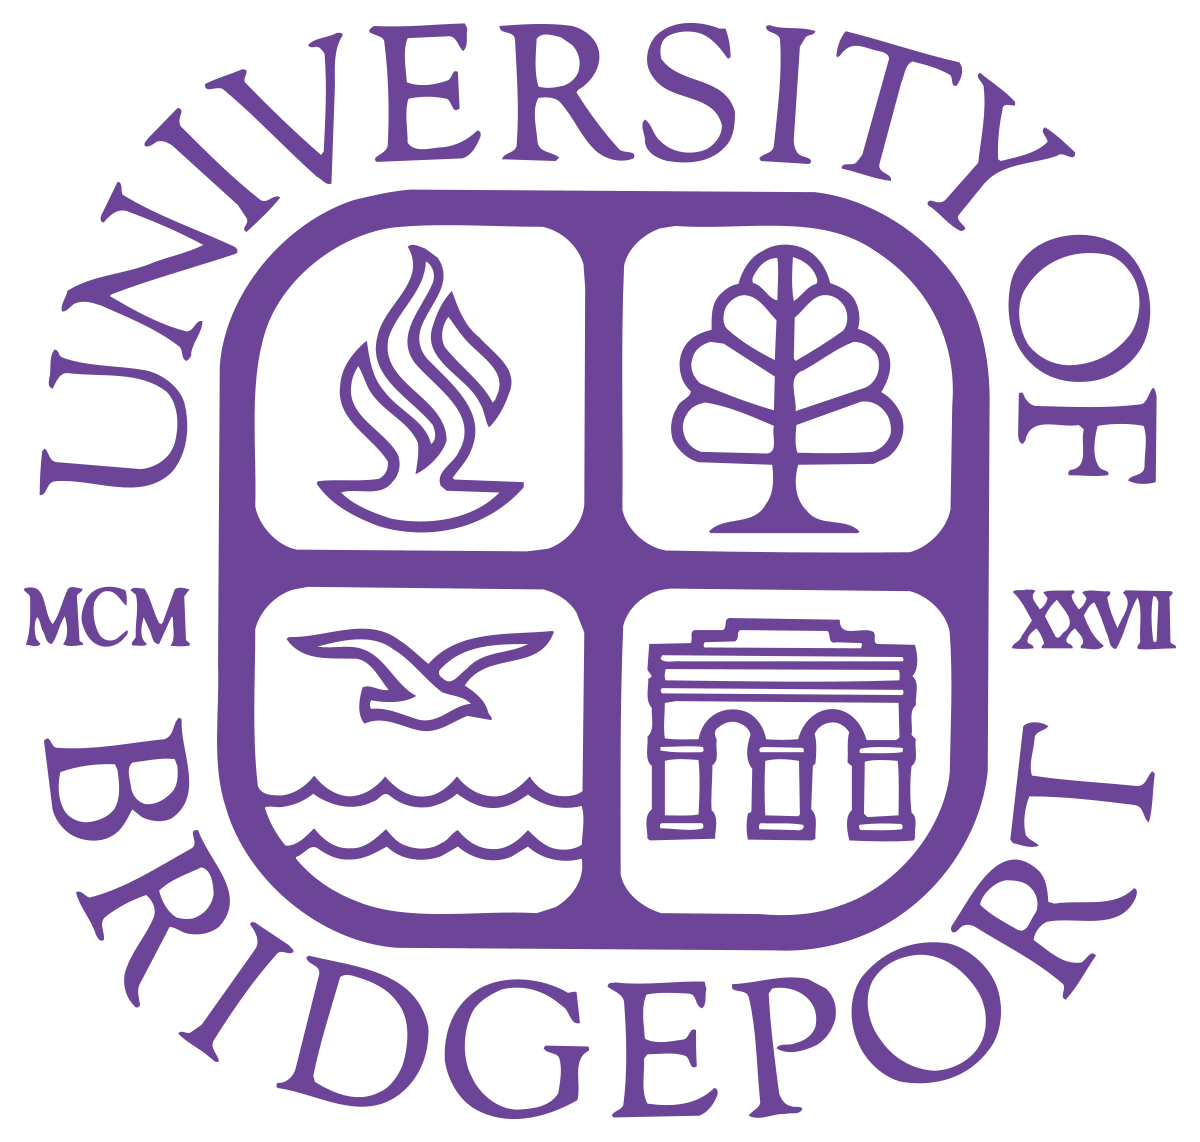 university of bridgeport